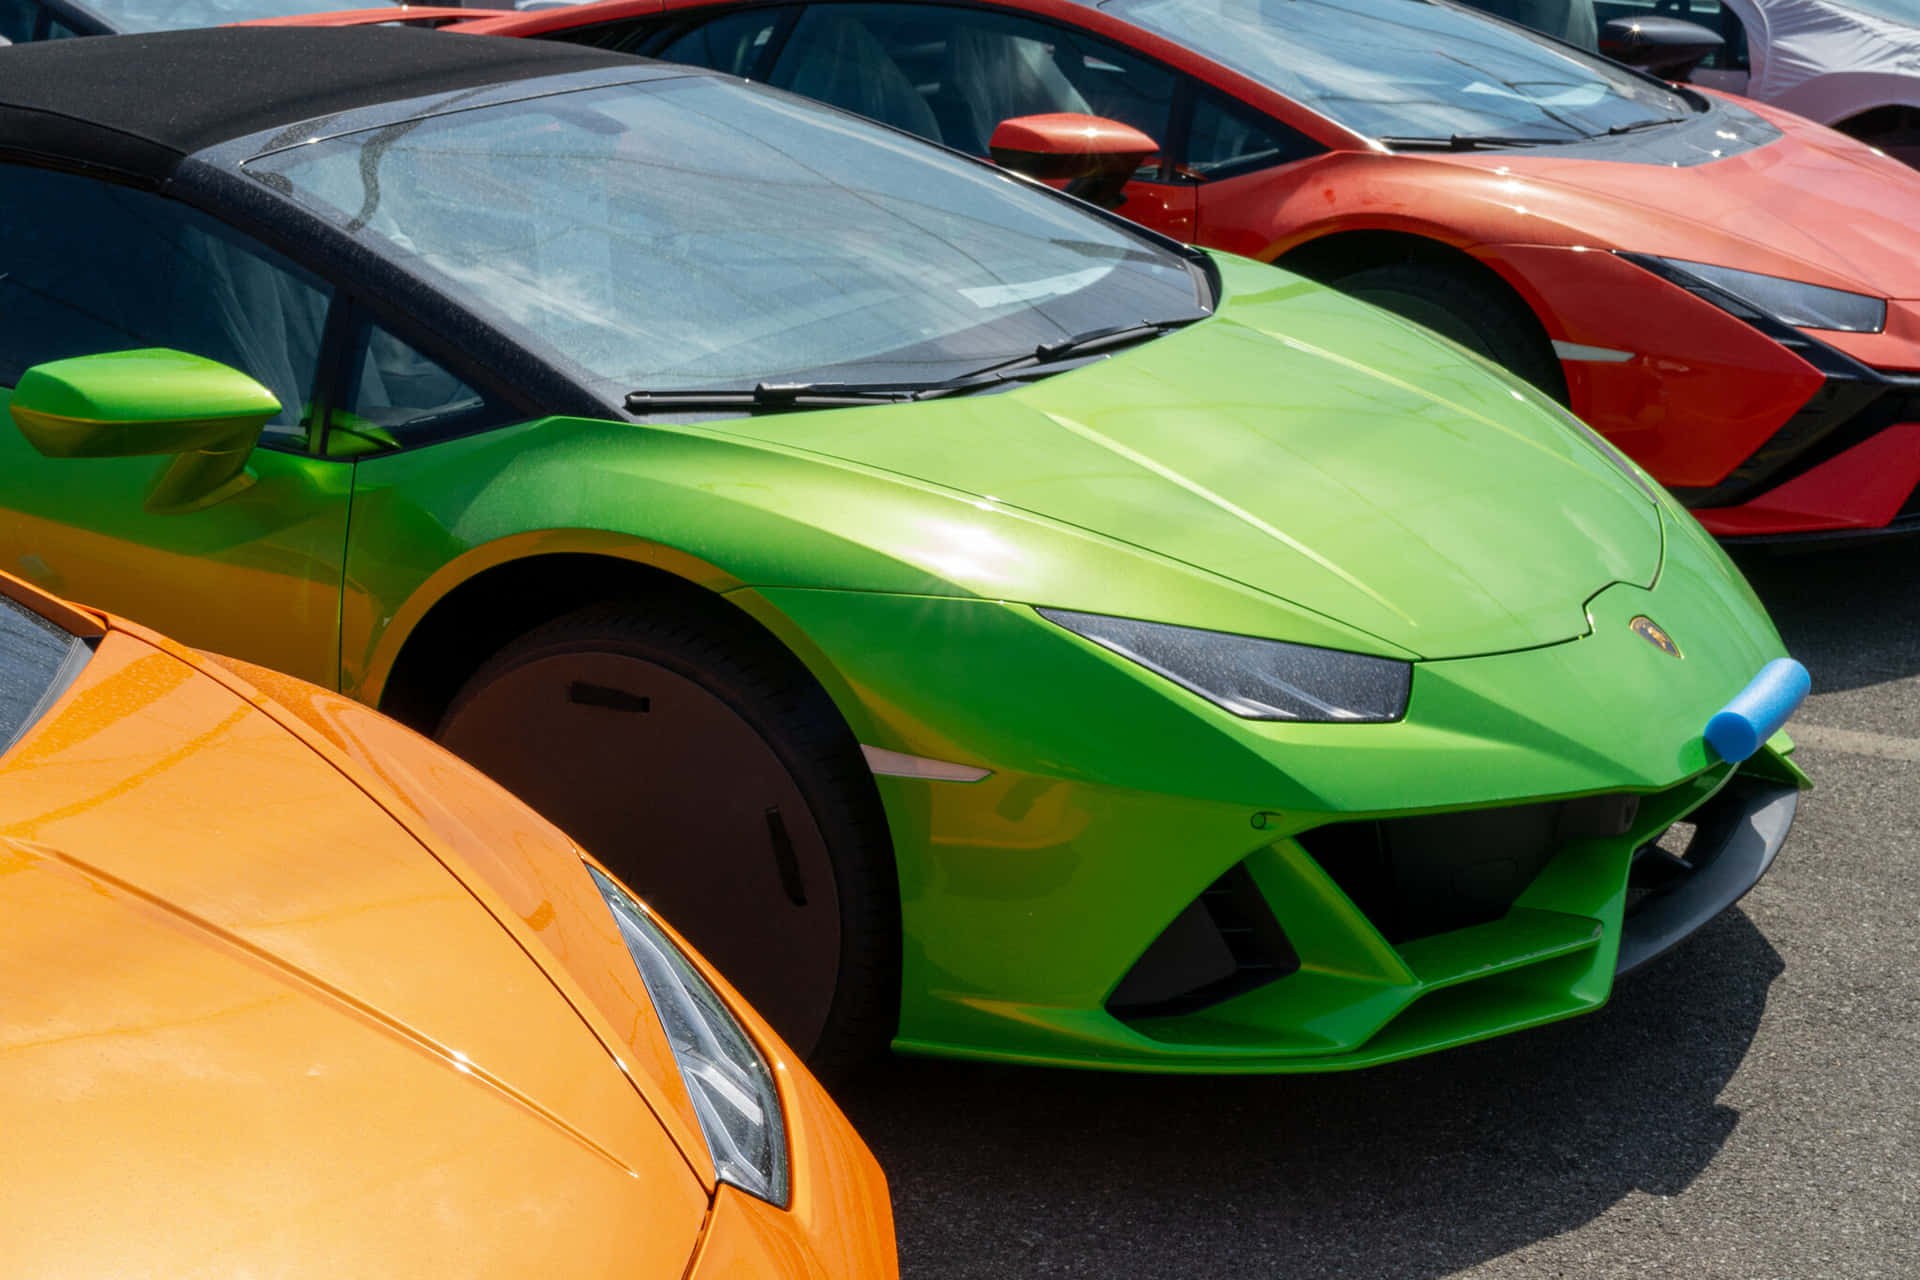 Unafila Di Colorate Auto Sportive Parcheggiate In Un Parcheggio